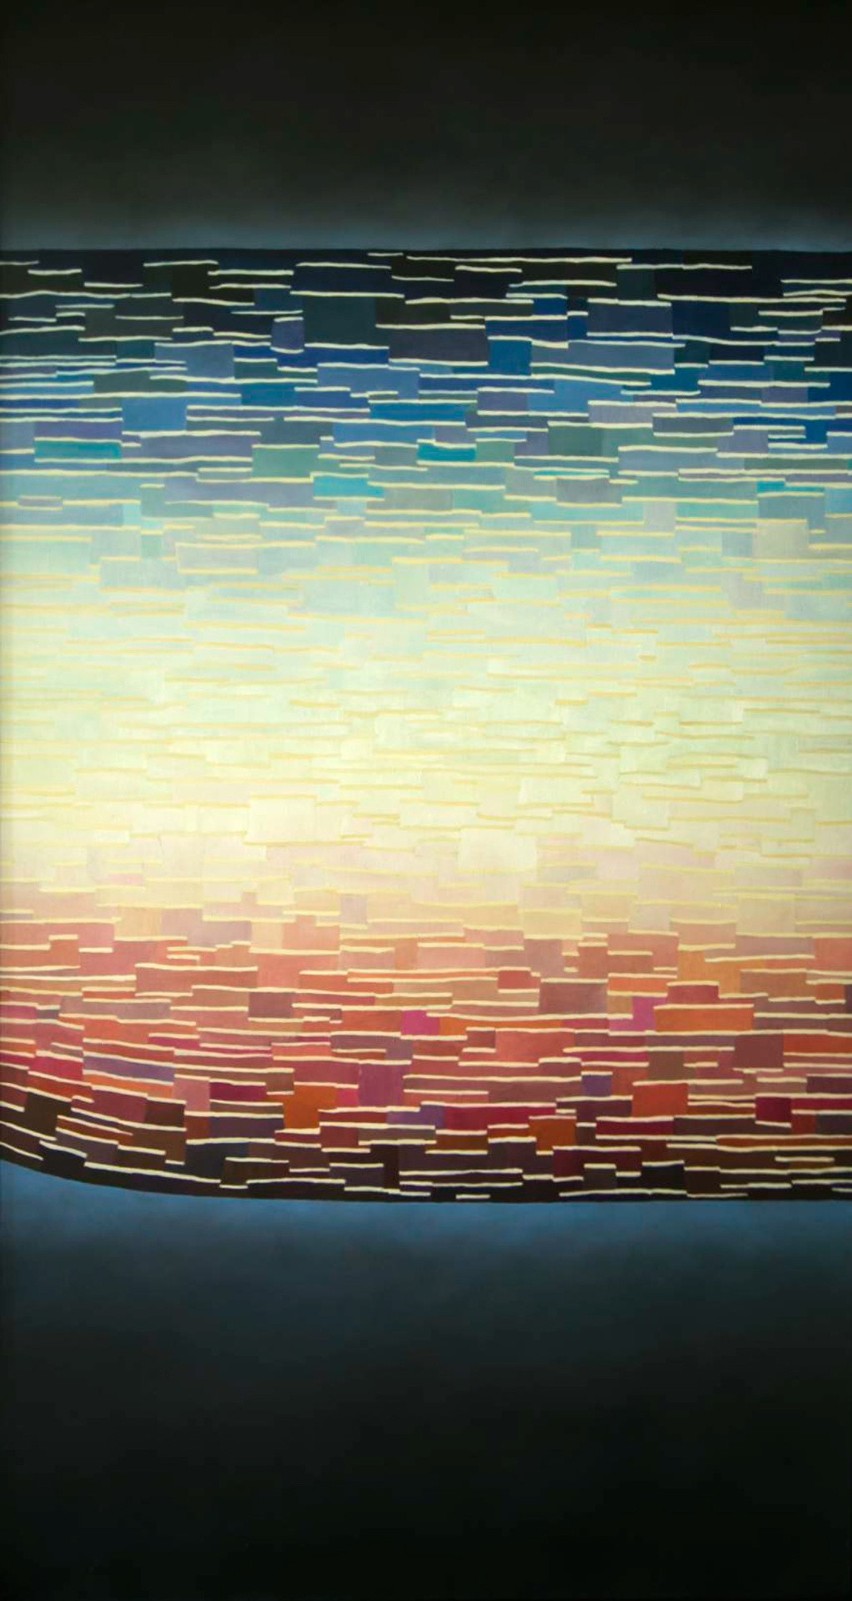 Pejzaż I , olej , płótno, 150x80 cm, 2015